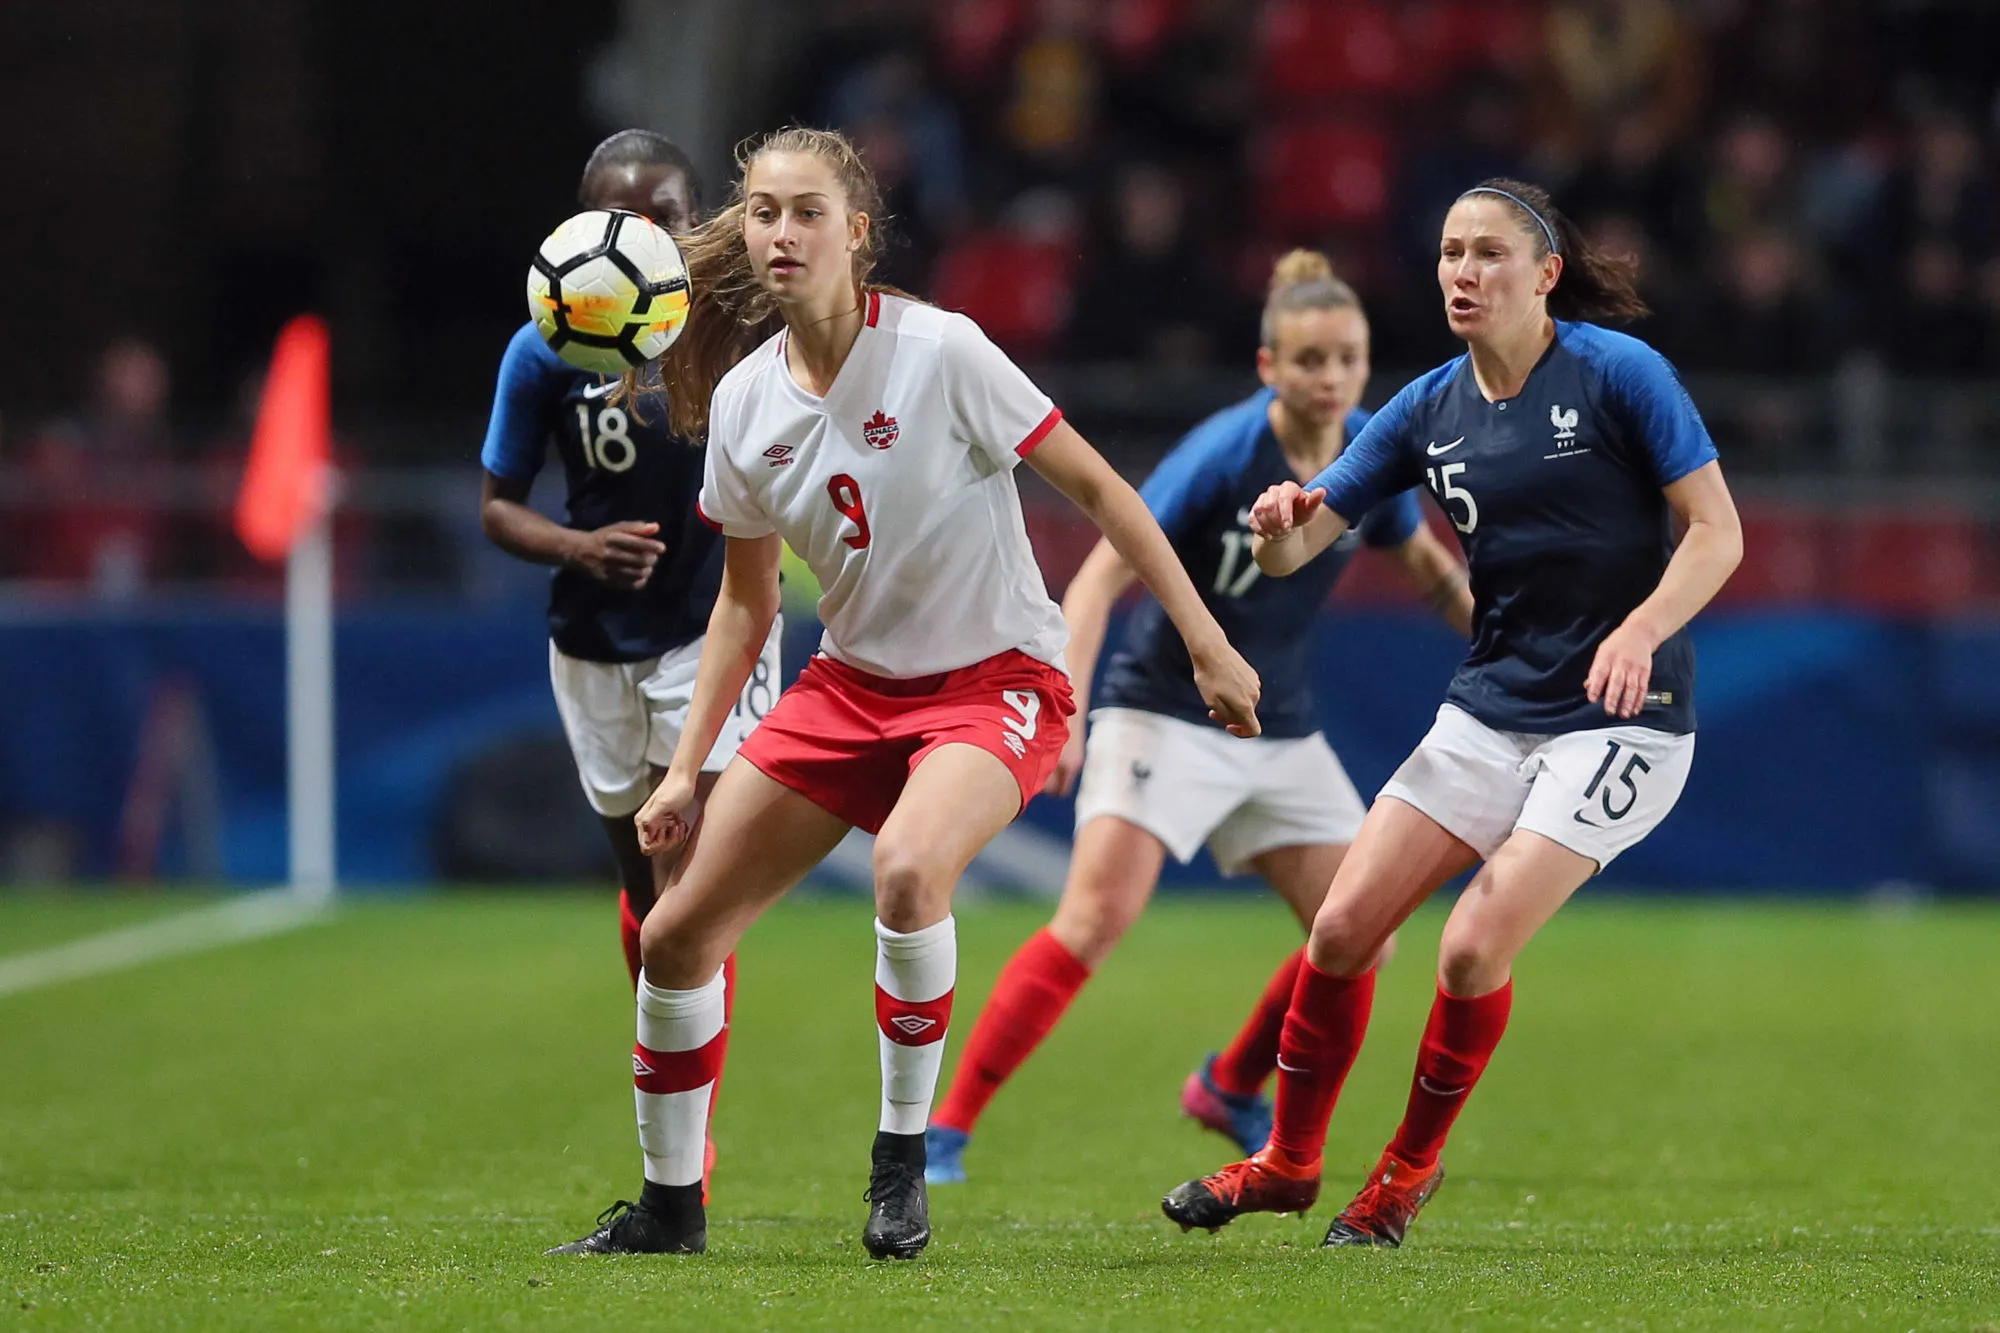 Pronostic Canada Nouvelle-Zélande : Analyse, prono et cotes du match de la Coupe du monde féminine 2019